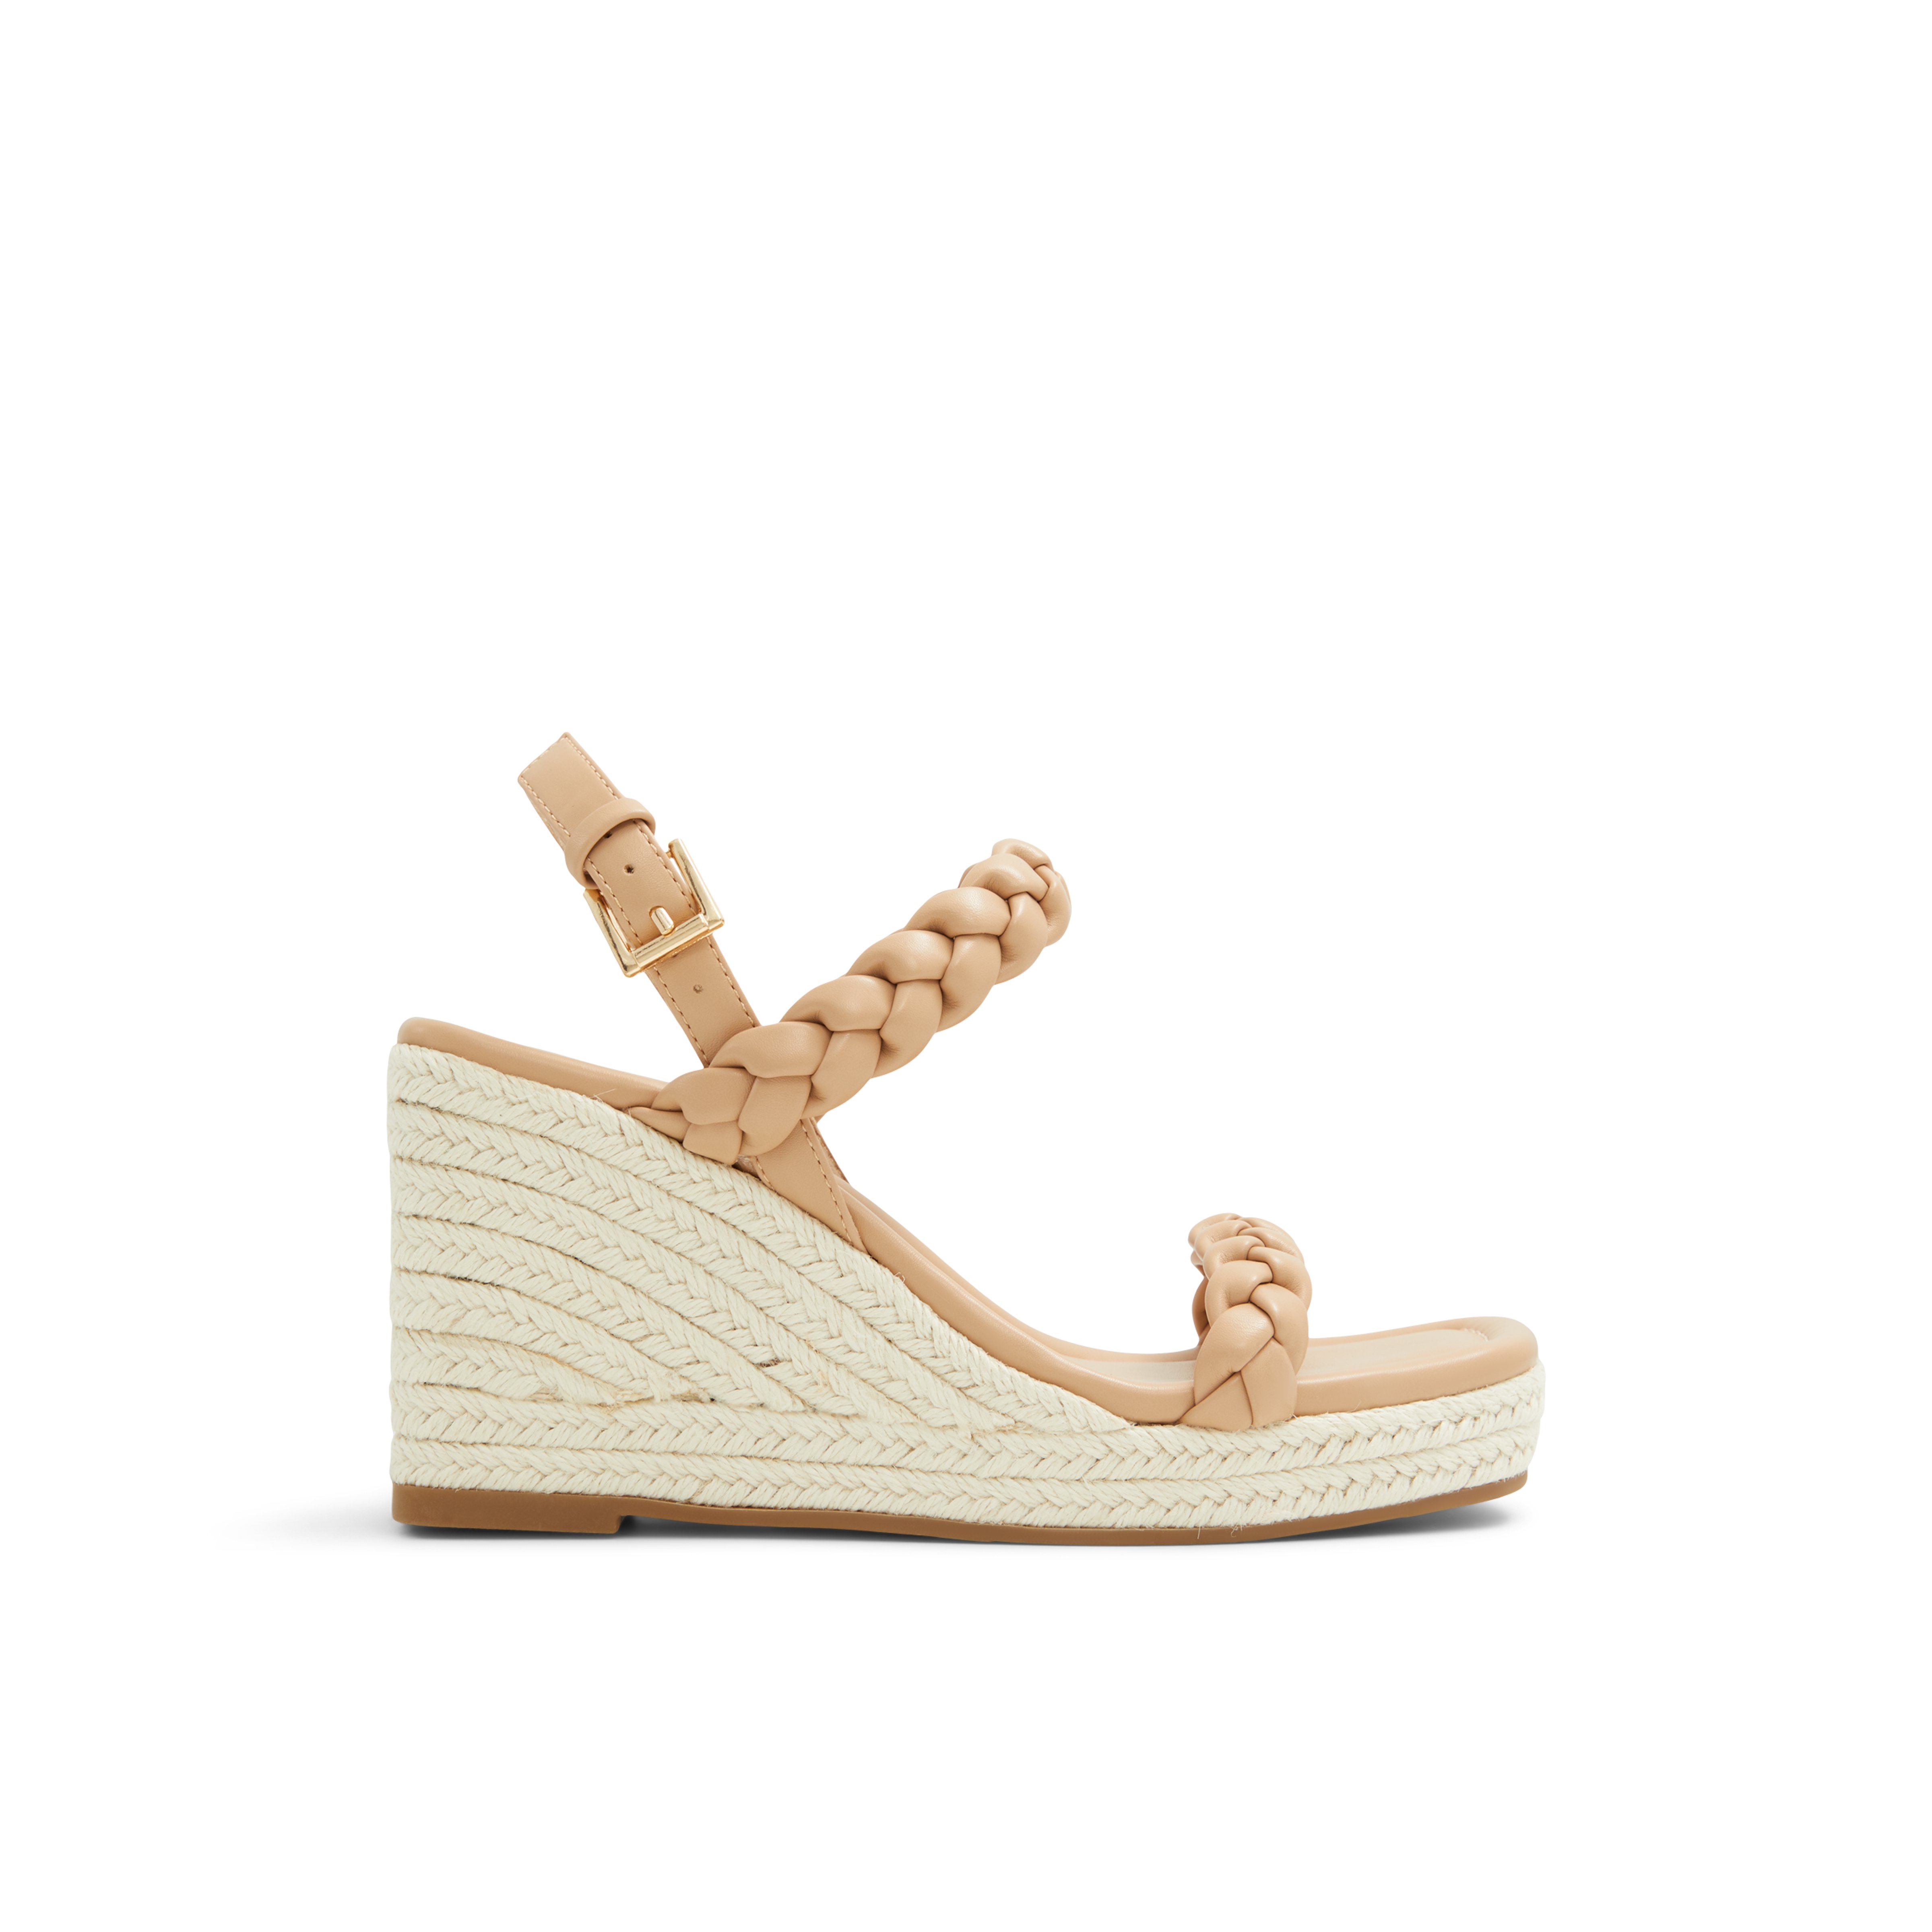 Siennah High heel chunky platform sandals - Wedge